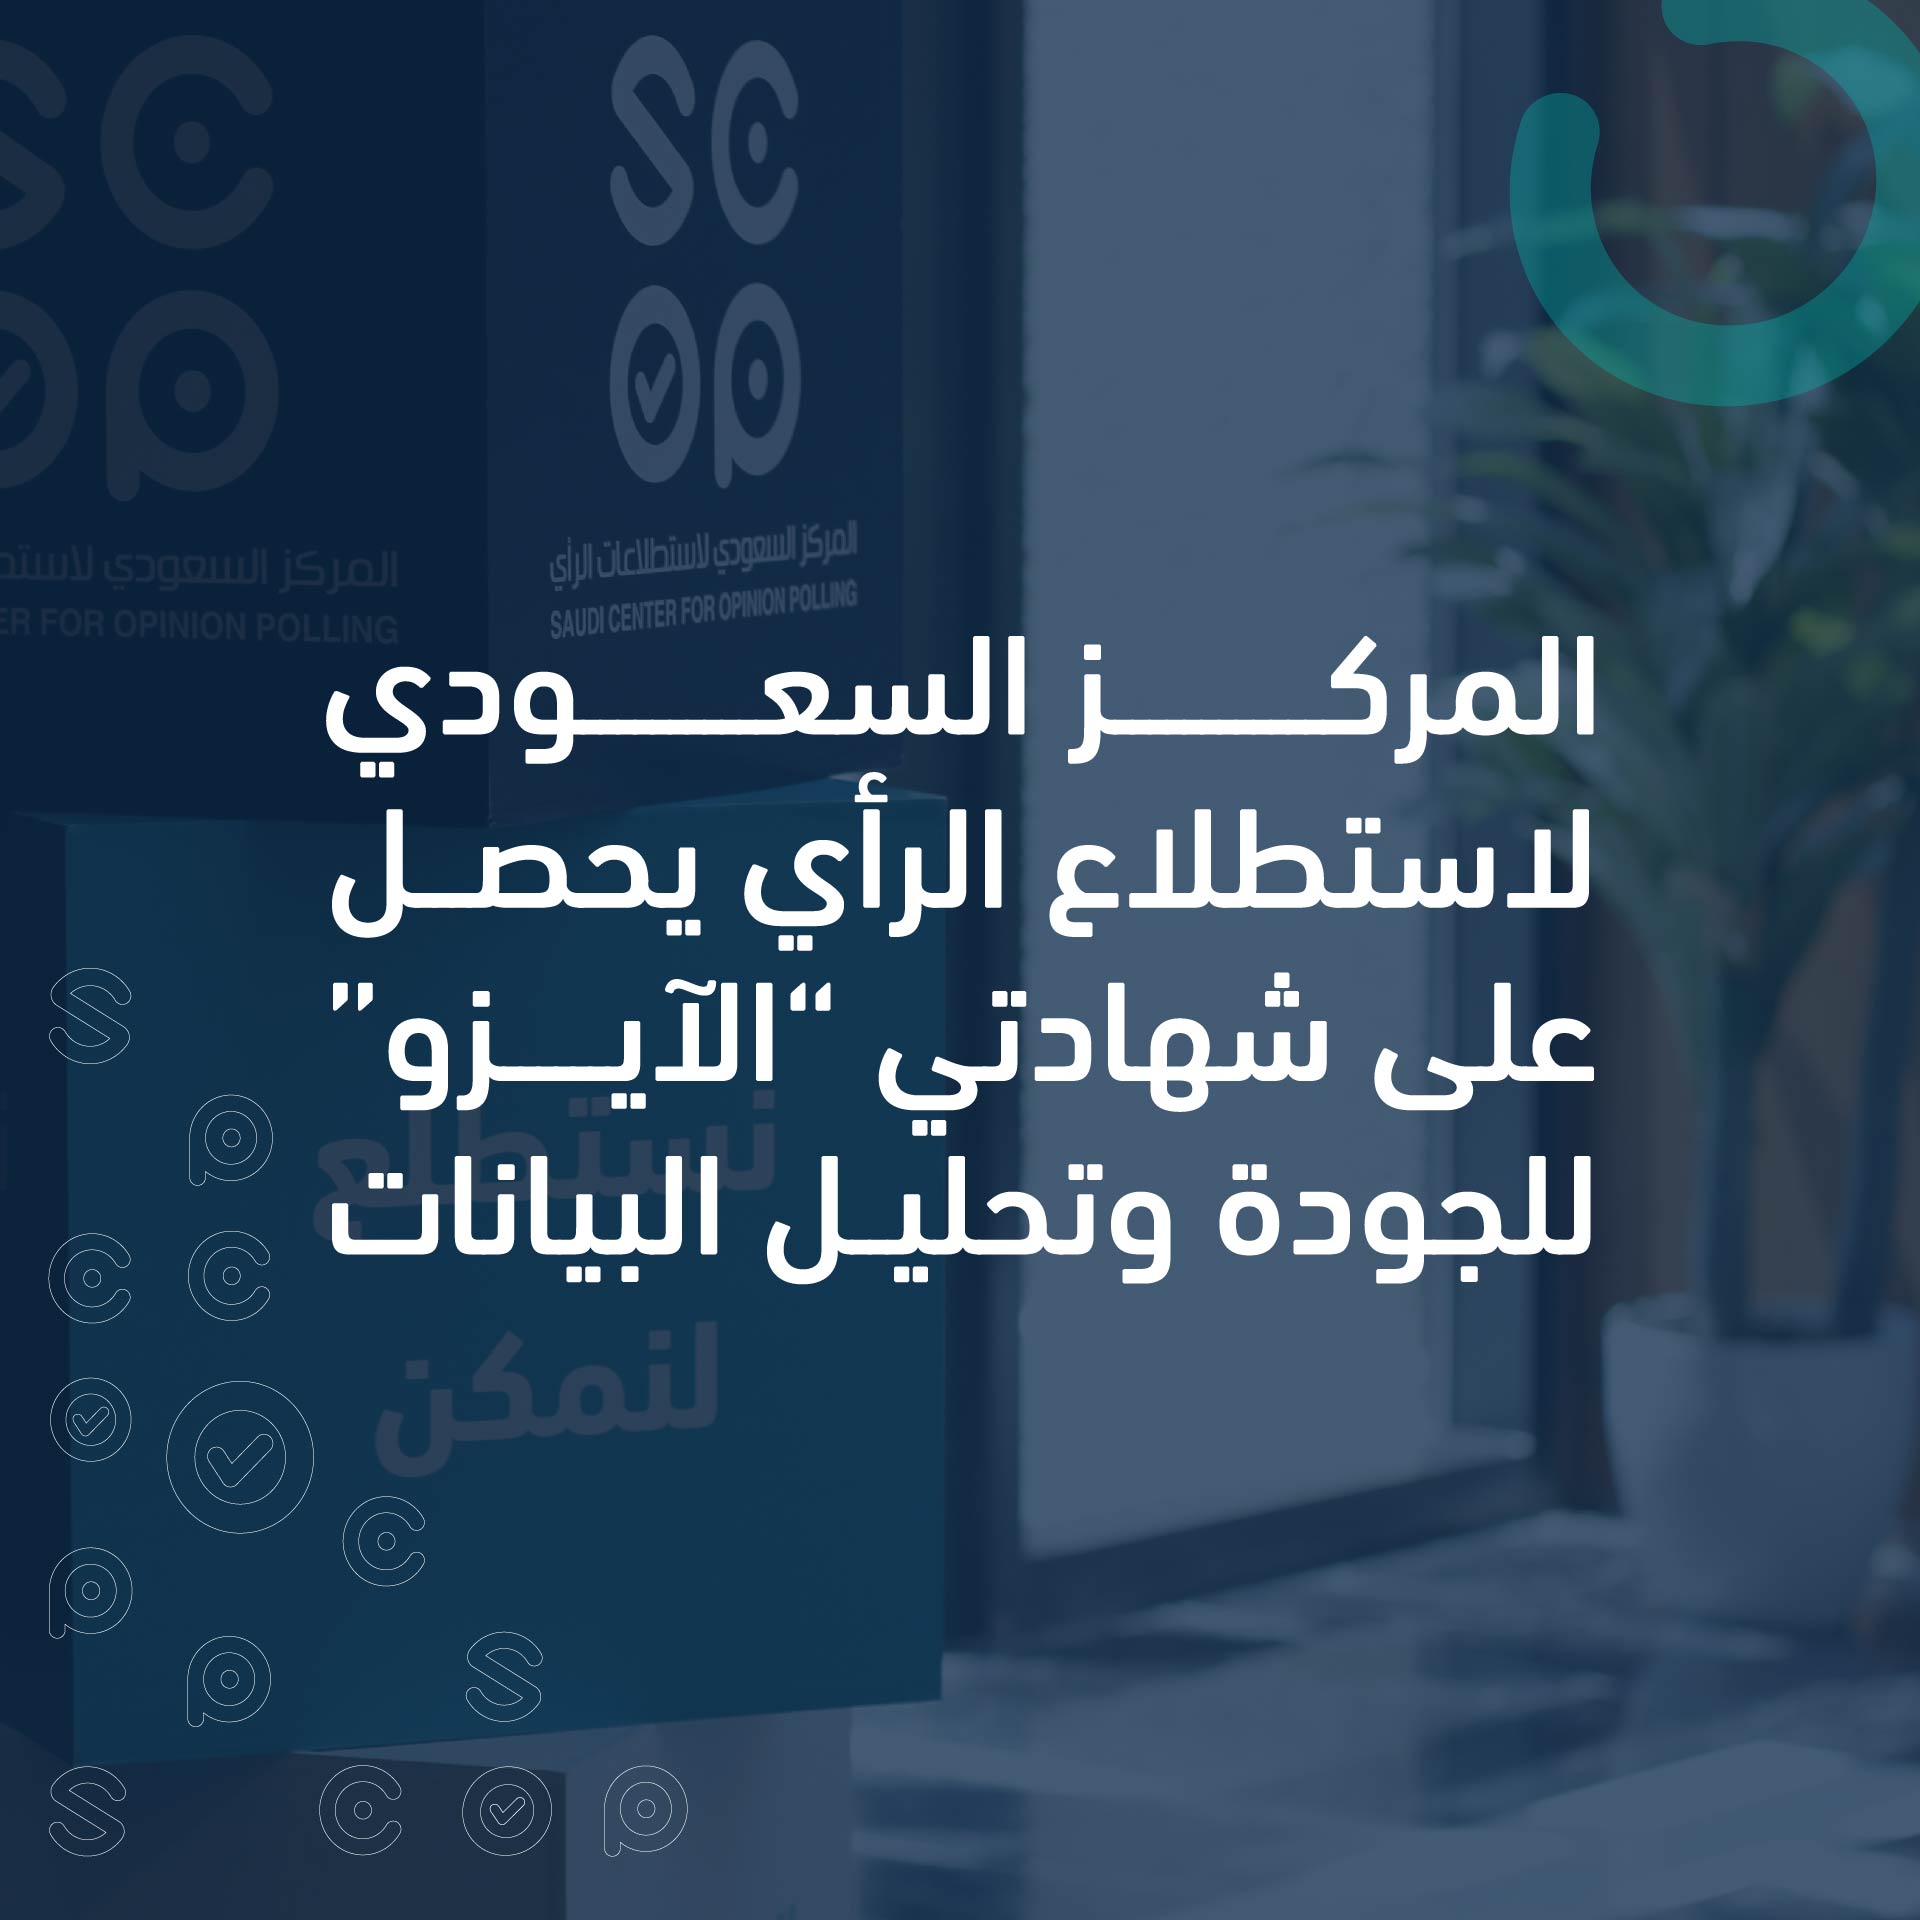 المركز السعودي لاستطلاع الرأي يحصل على شهادتي “الآيزو” للجودة وتحليل البيانات.